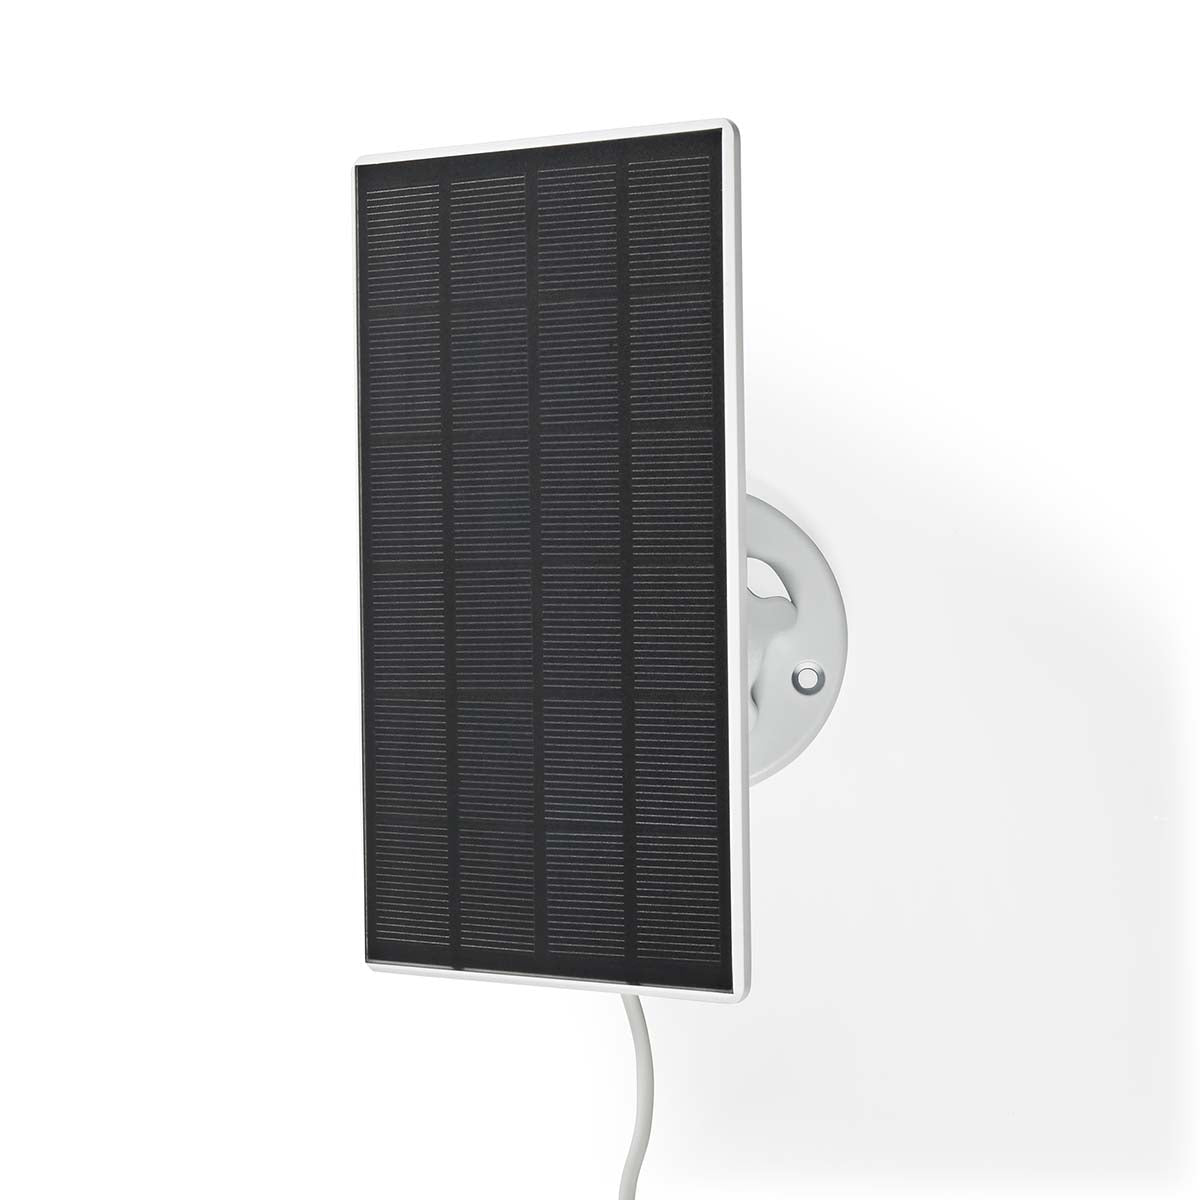 Solarpanel mit Micro-USB wurde zum Aufladen der Außenkamera WIFICBO30WT entwickelt